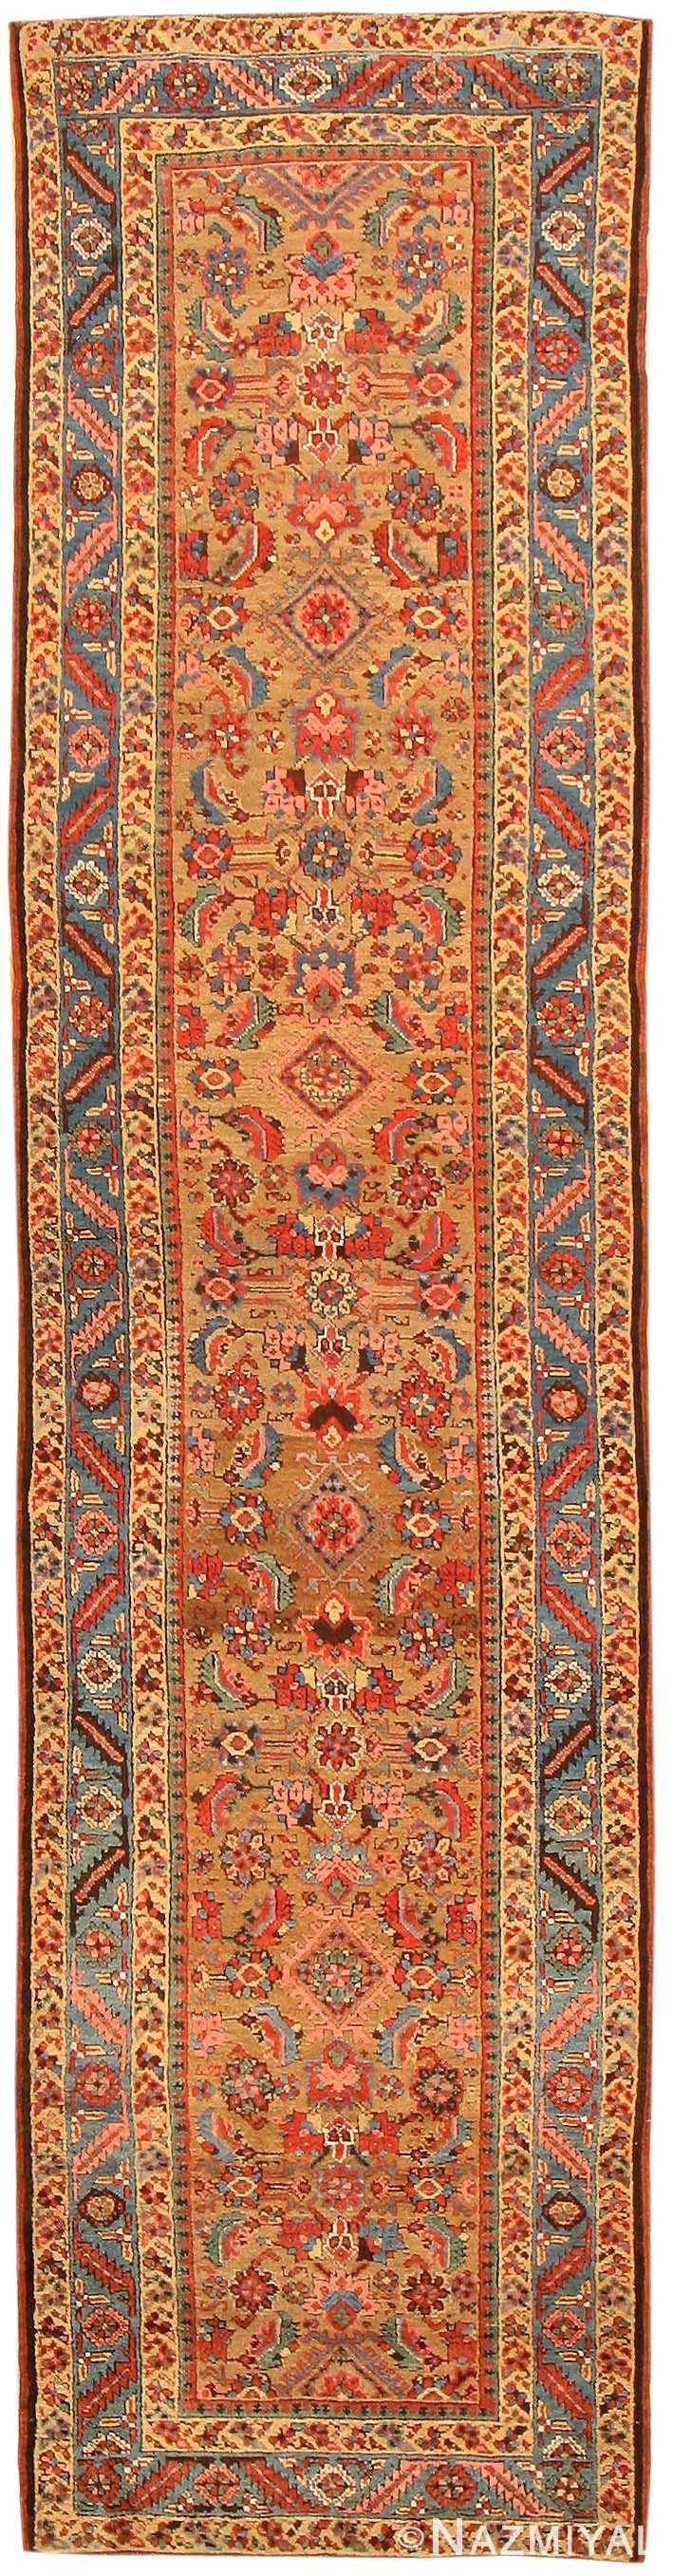 Antique Bakshaish Persian Rugs 43845 Detail/Large View